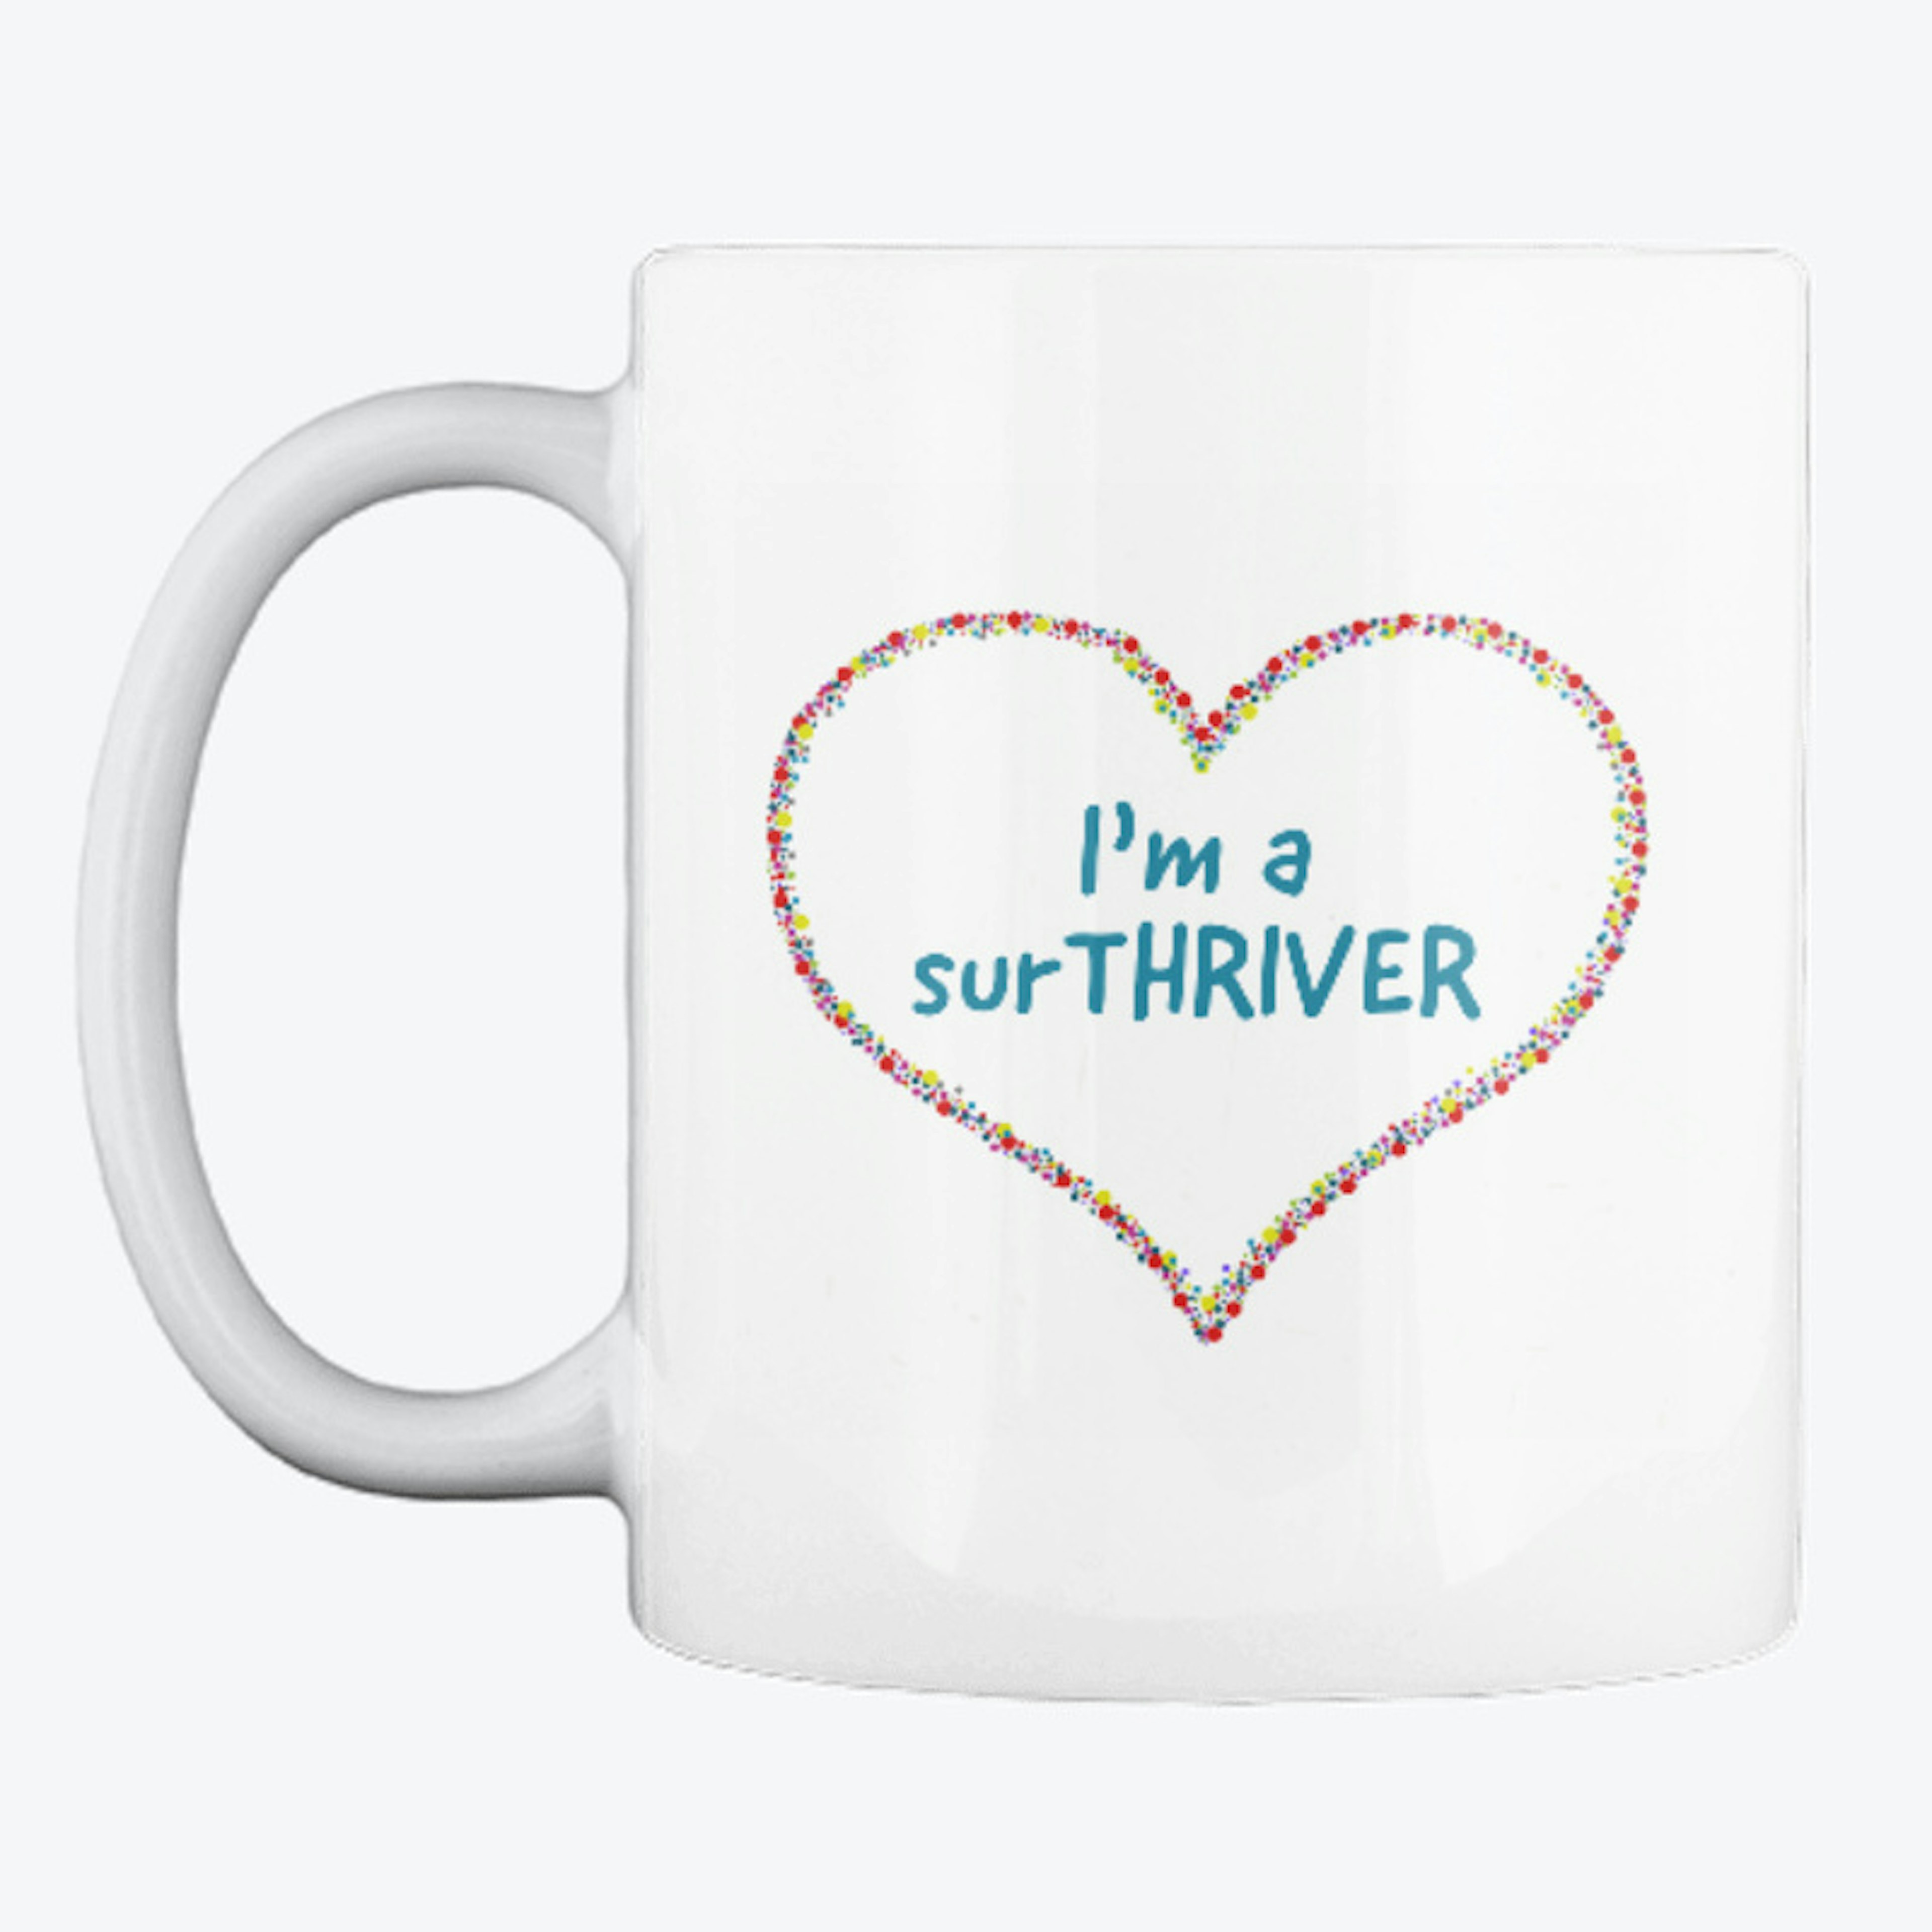 I 'm a surTHRIVER Mug 